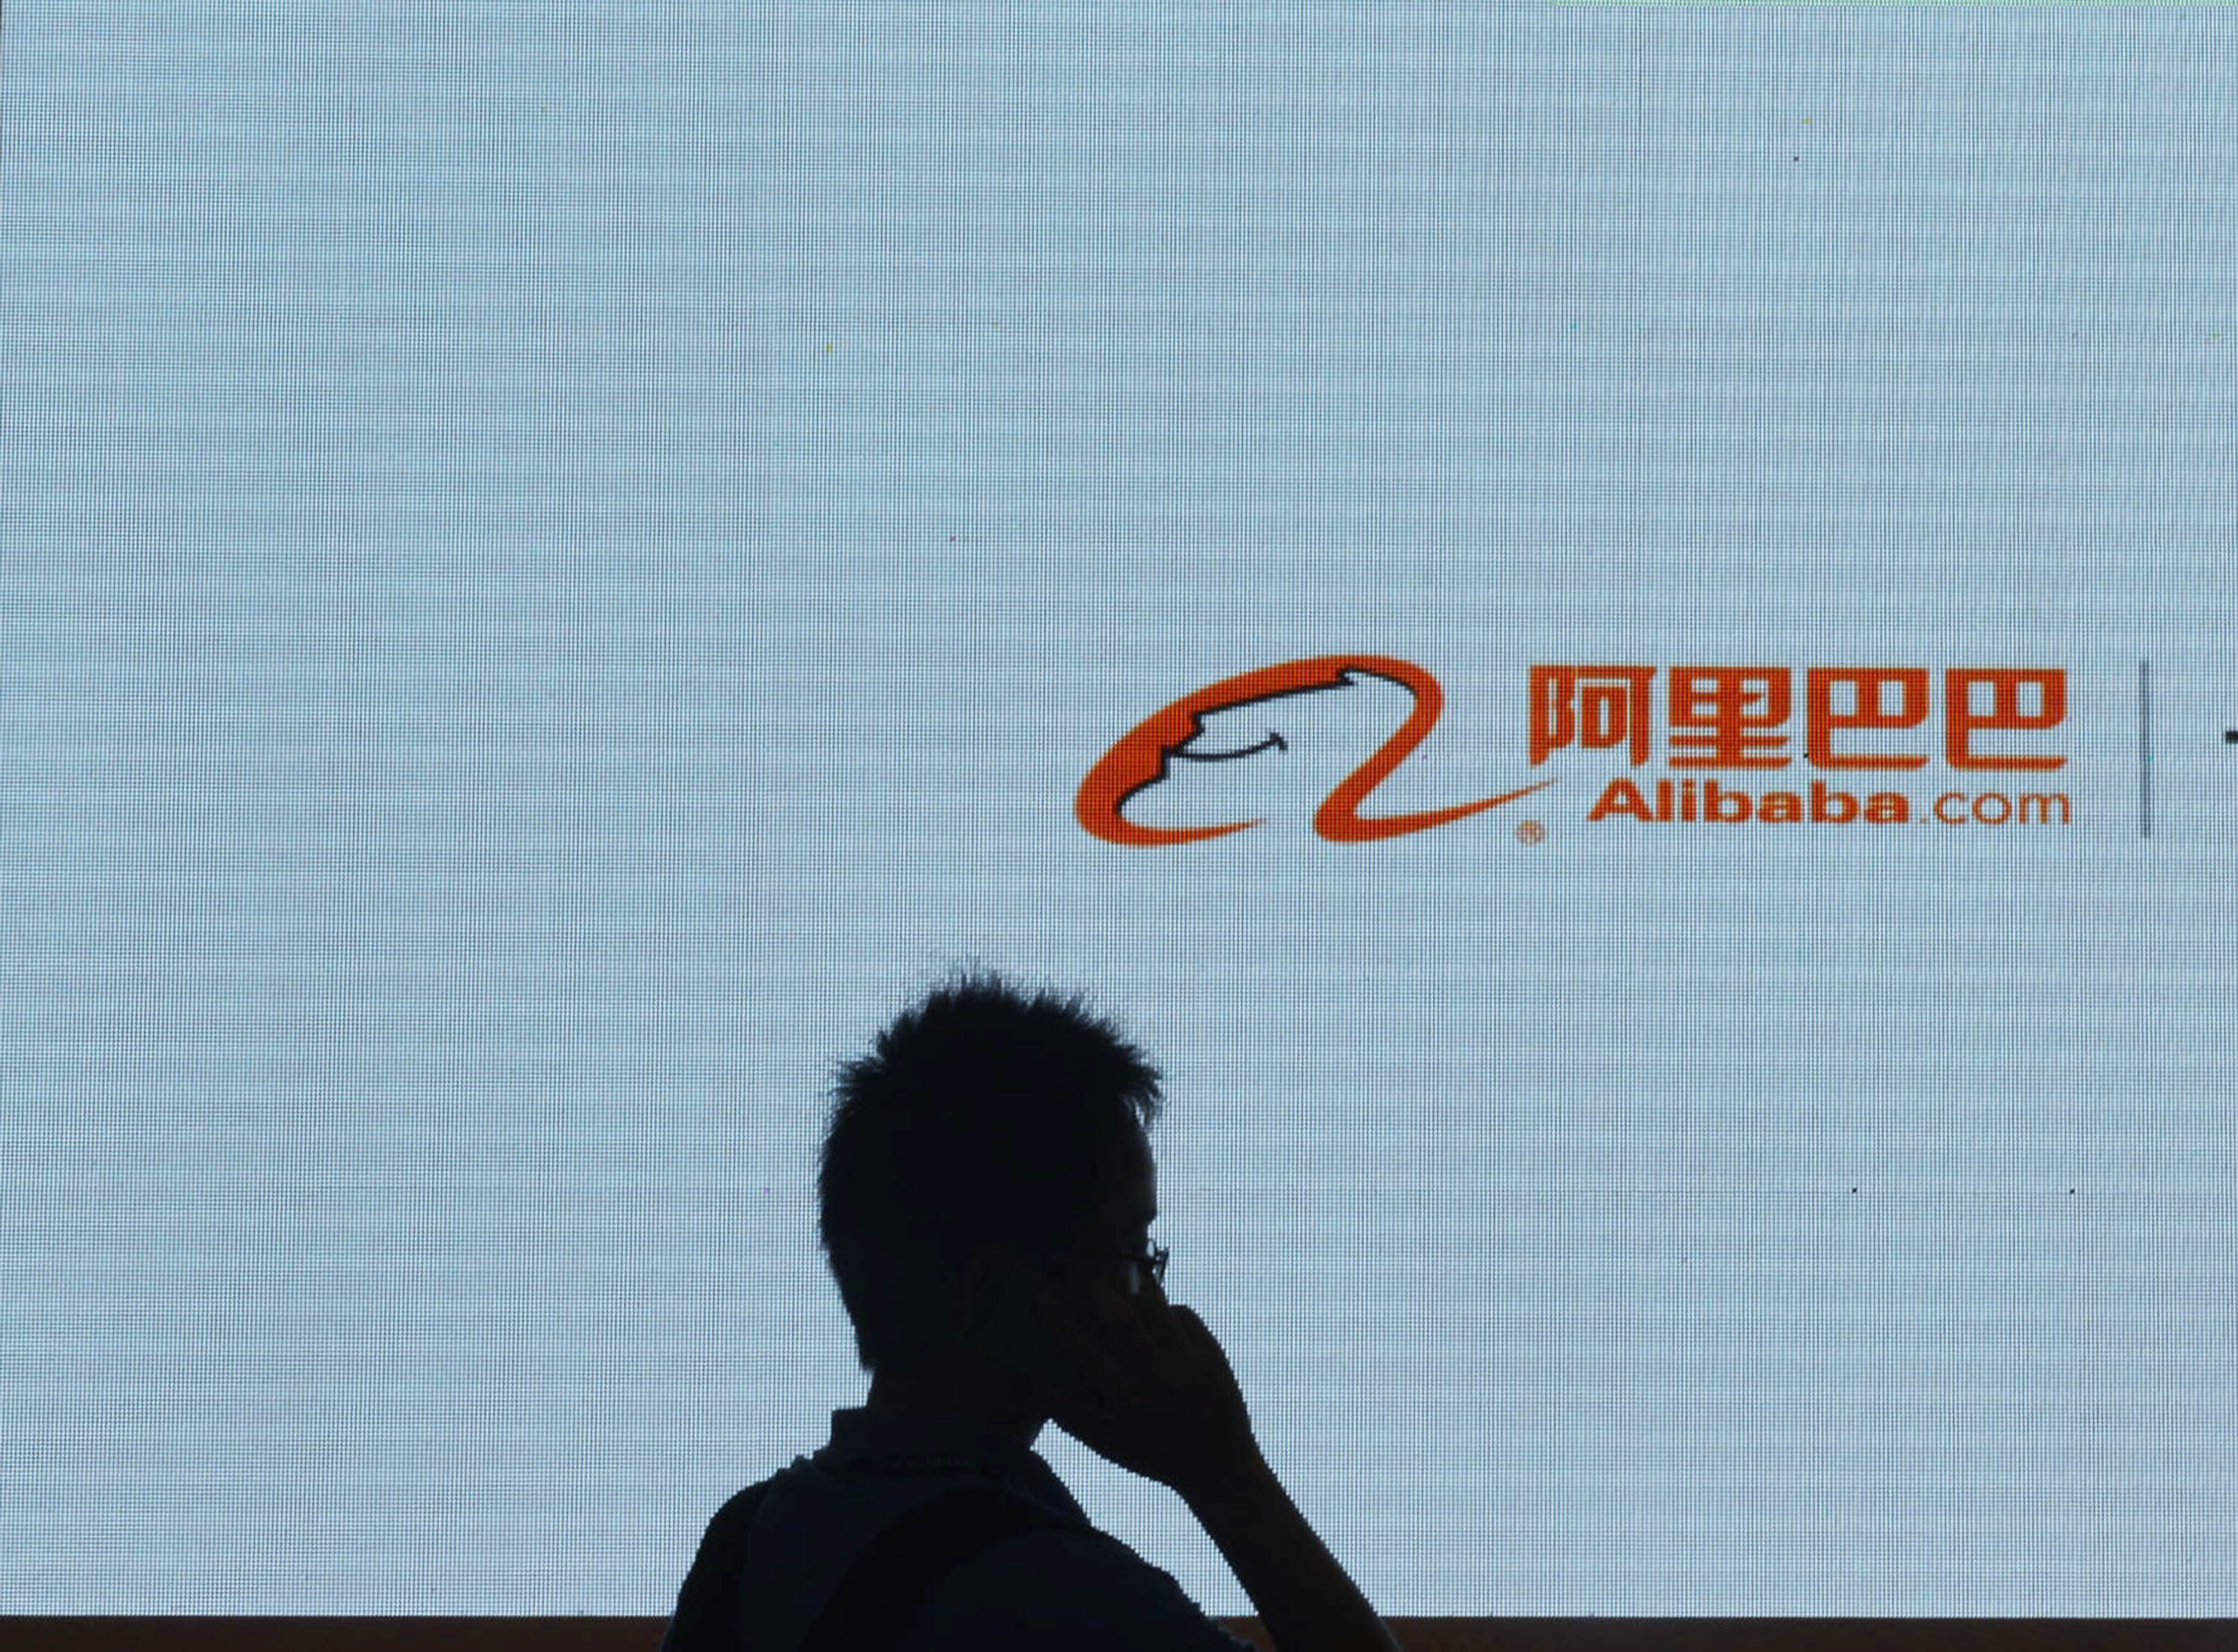 Alibaba: Yahoo verdient 9,4 Milliarden US-Dollar durch Alibaba-Börsengang